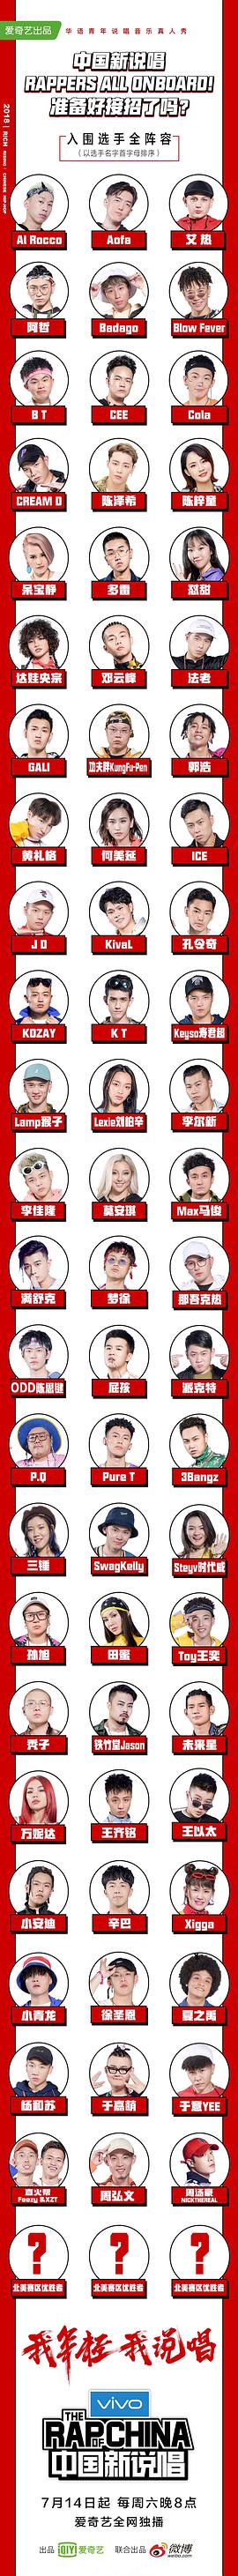 中国新说唱第一季选手名单 图3